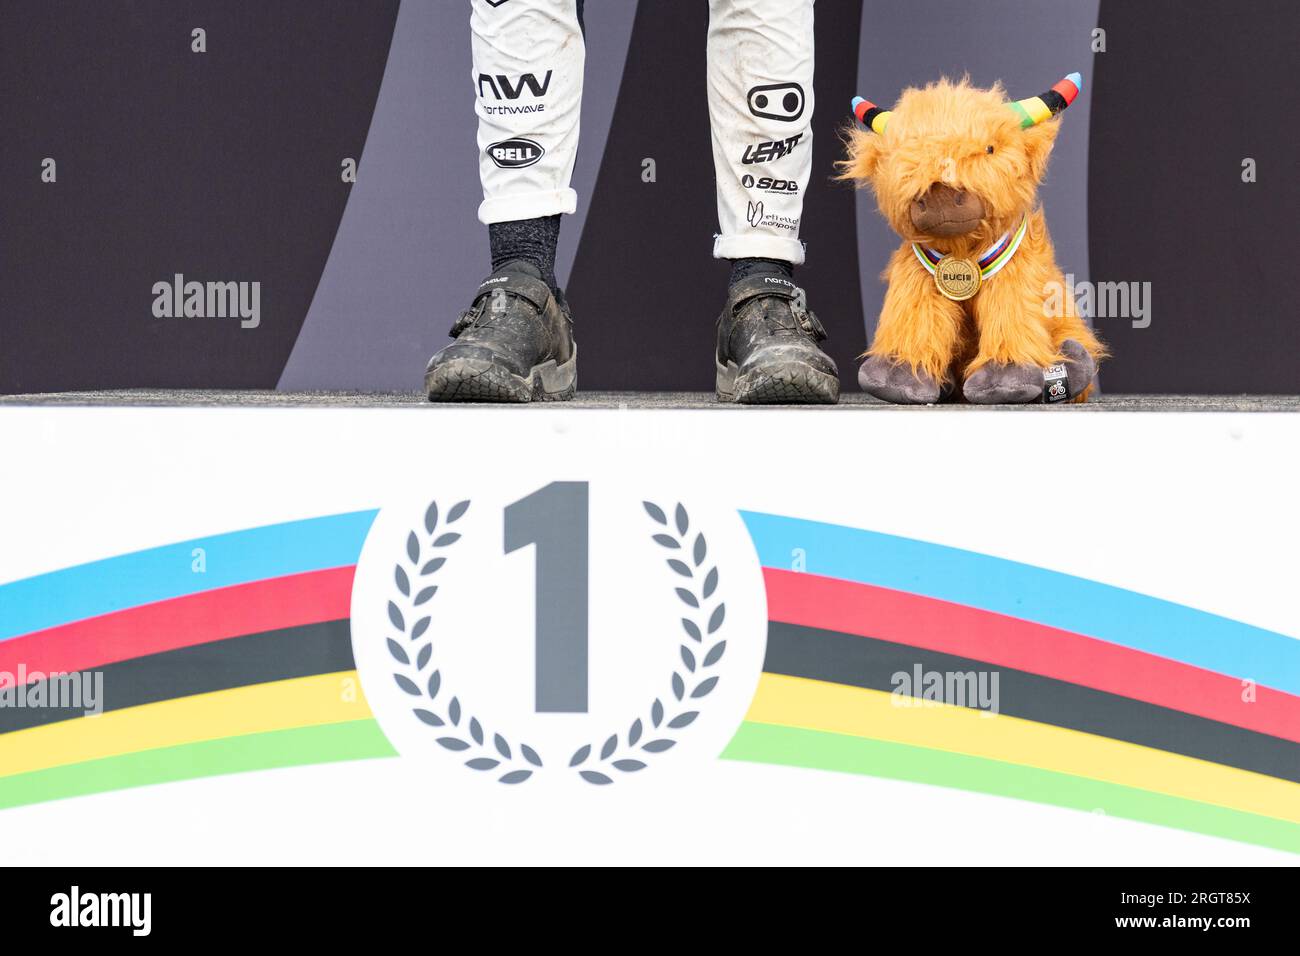 Bovins de vache des hautes terres UCI présentés aux vainqueurs du podium aux Championnats du monde de cyclisme UCI 2023, Écosse, Royaume-Uni Banque D'Images